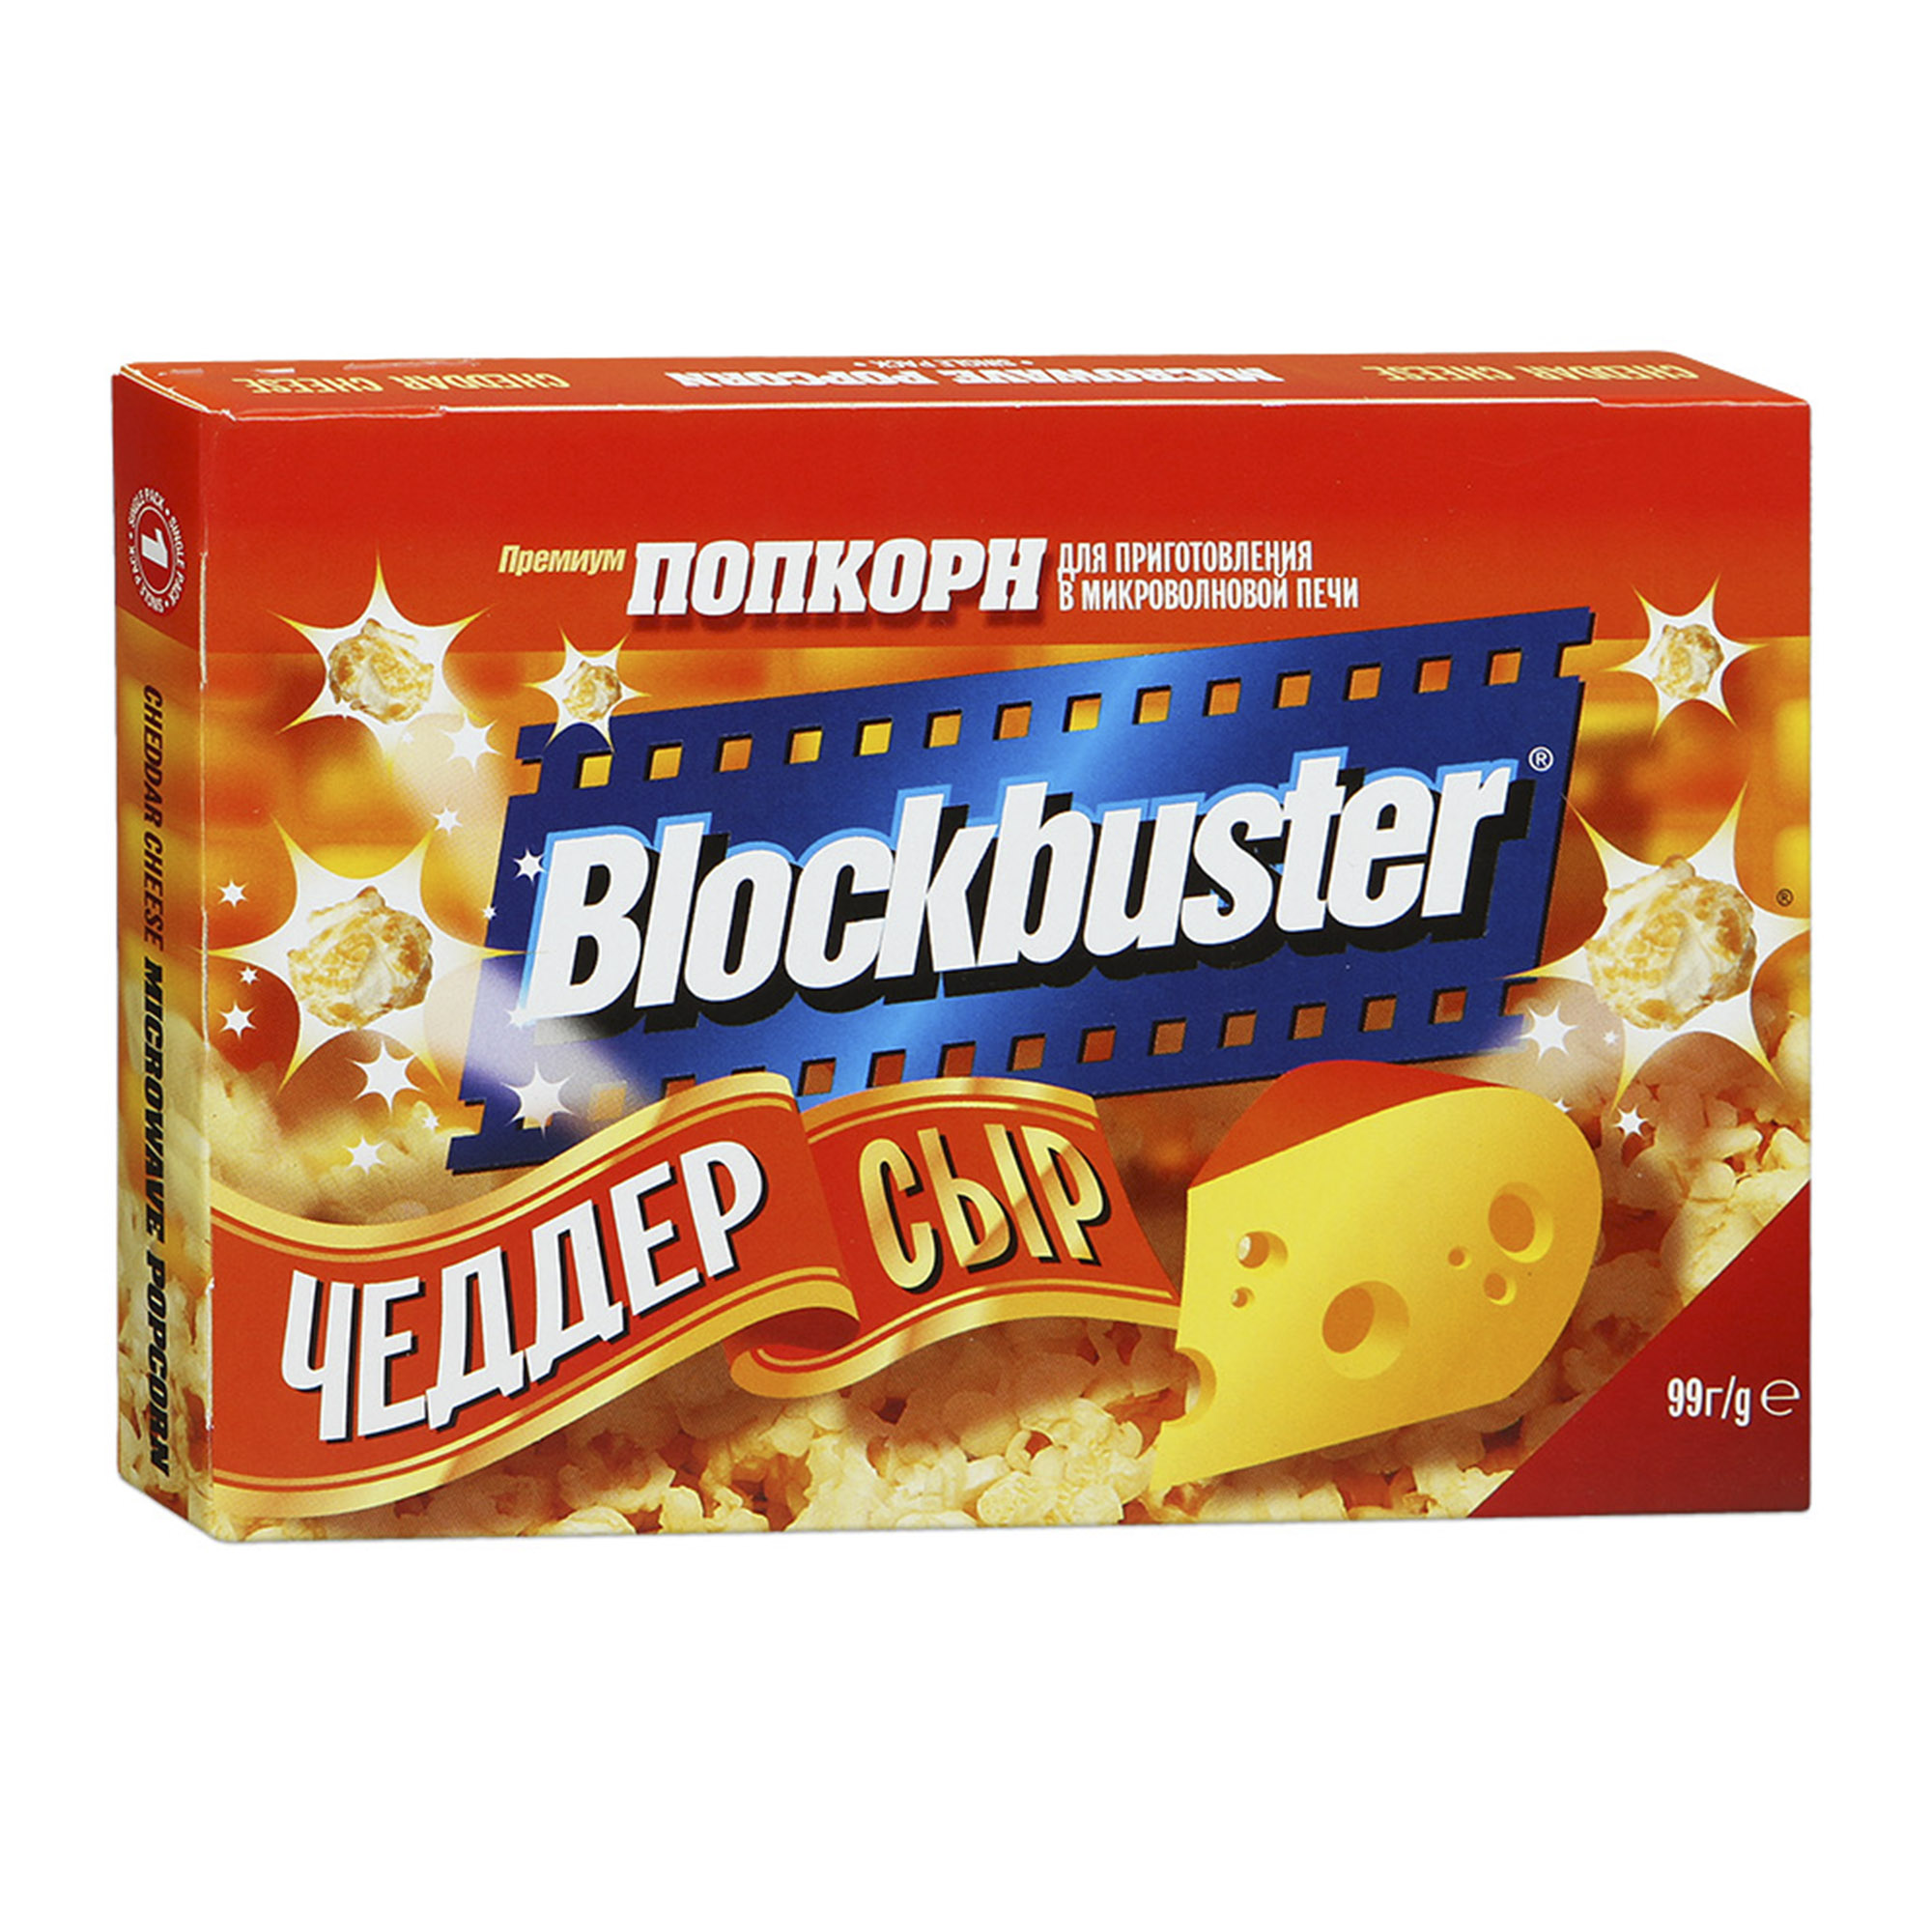 Попкорн Blockbuster с сыром Чеддер 90 г попкорн holy corn сладко солёный 30 гр